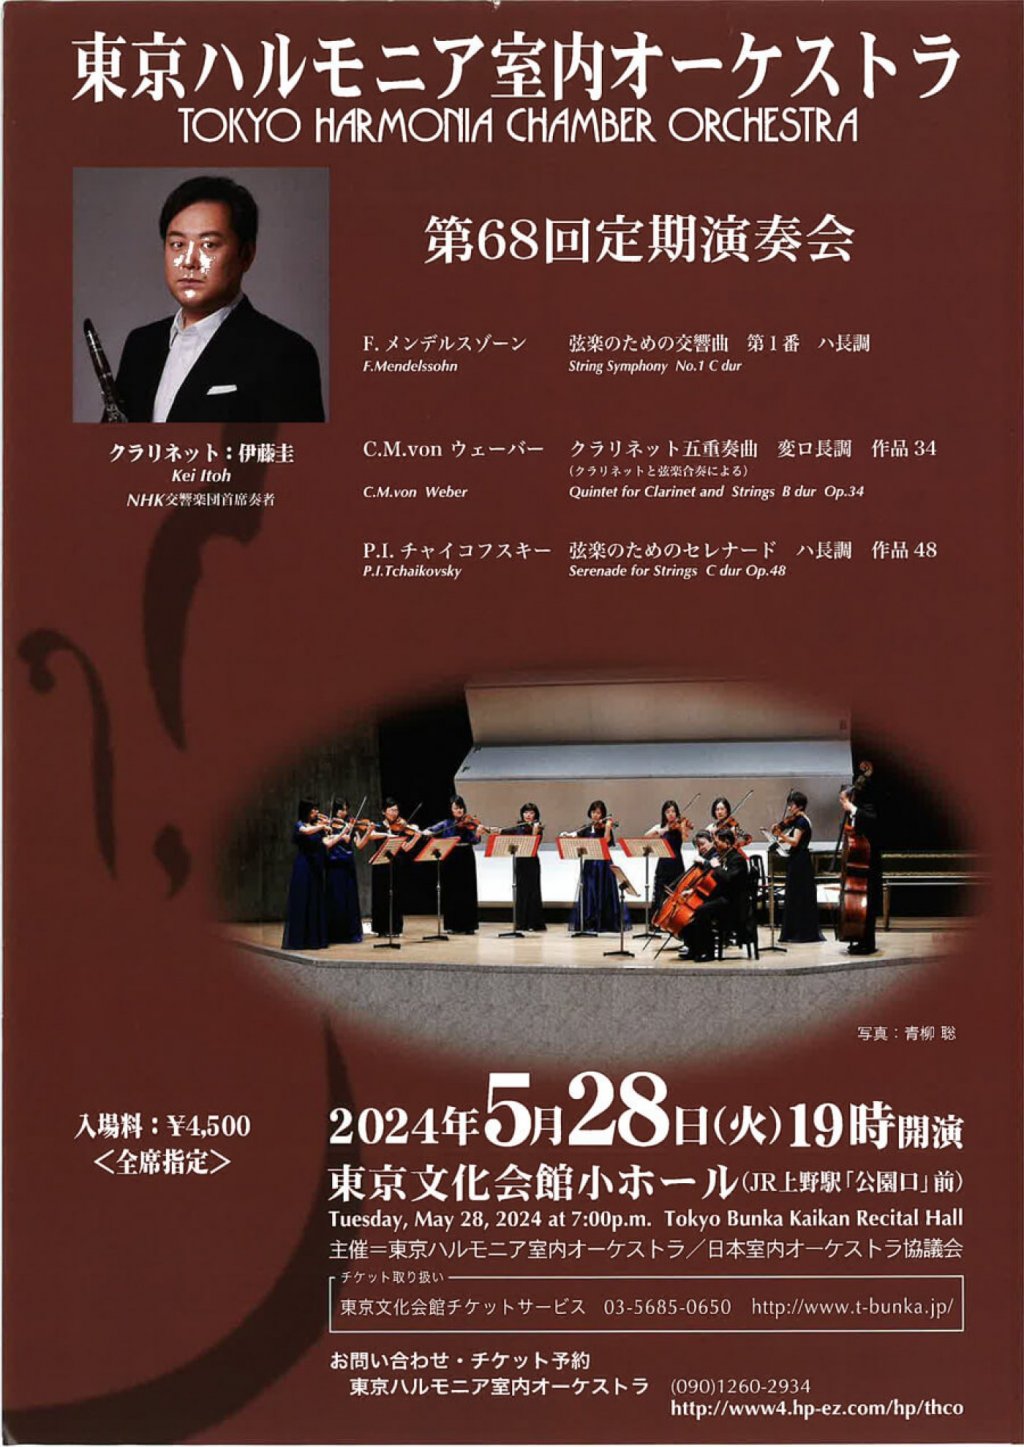 東京ハルモニア室内オーケストラ TOKYO HARMONIA CHAMBER ORCHESTRA 第68回定期演奏会